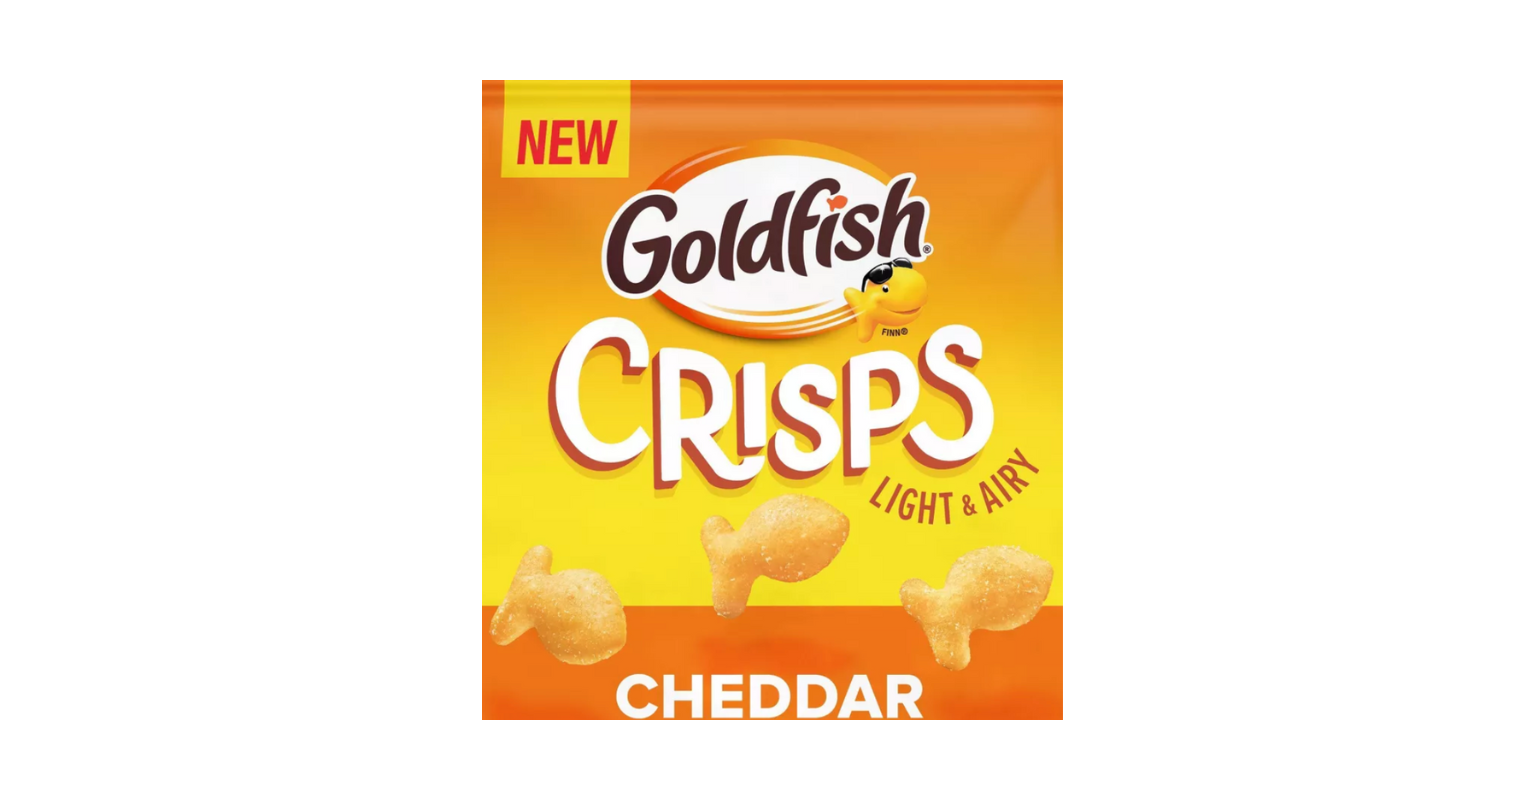 Cheddar Goldfish Crisps.png